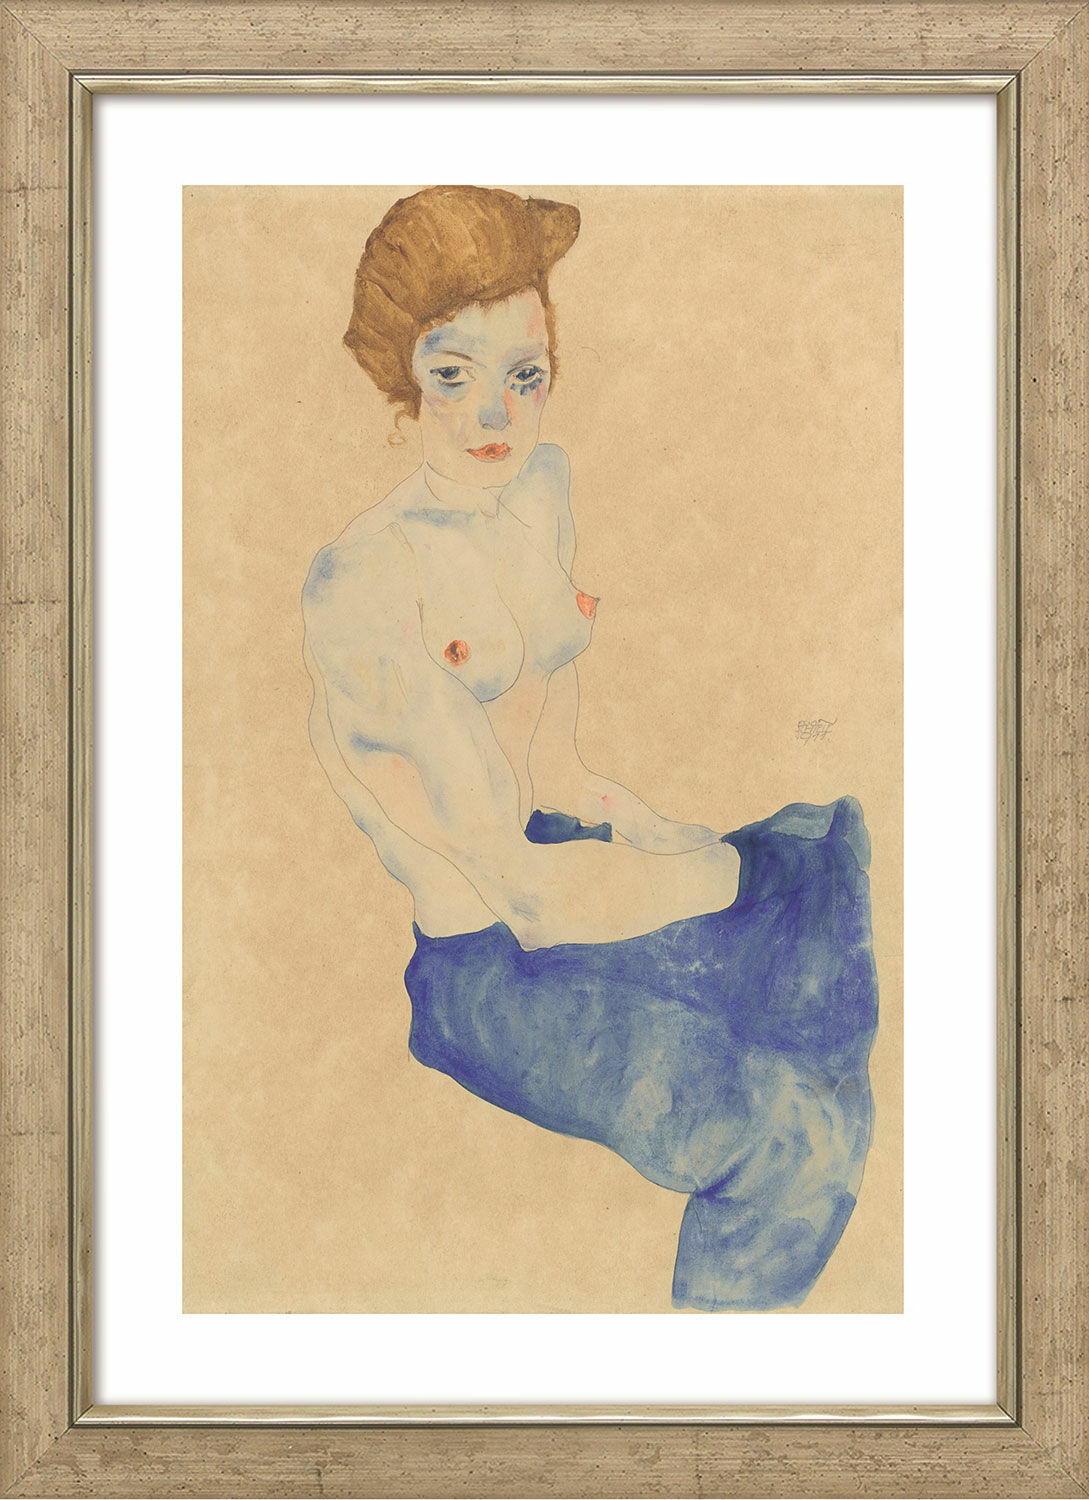 Bild "Sitzendes Mädchen mit nacktem Oberkörper und blauem Rock" (1911), gerahmt von Egon Schiele